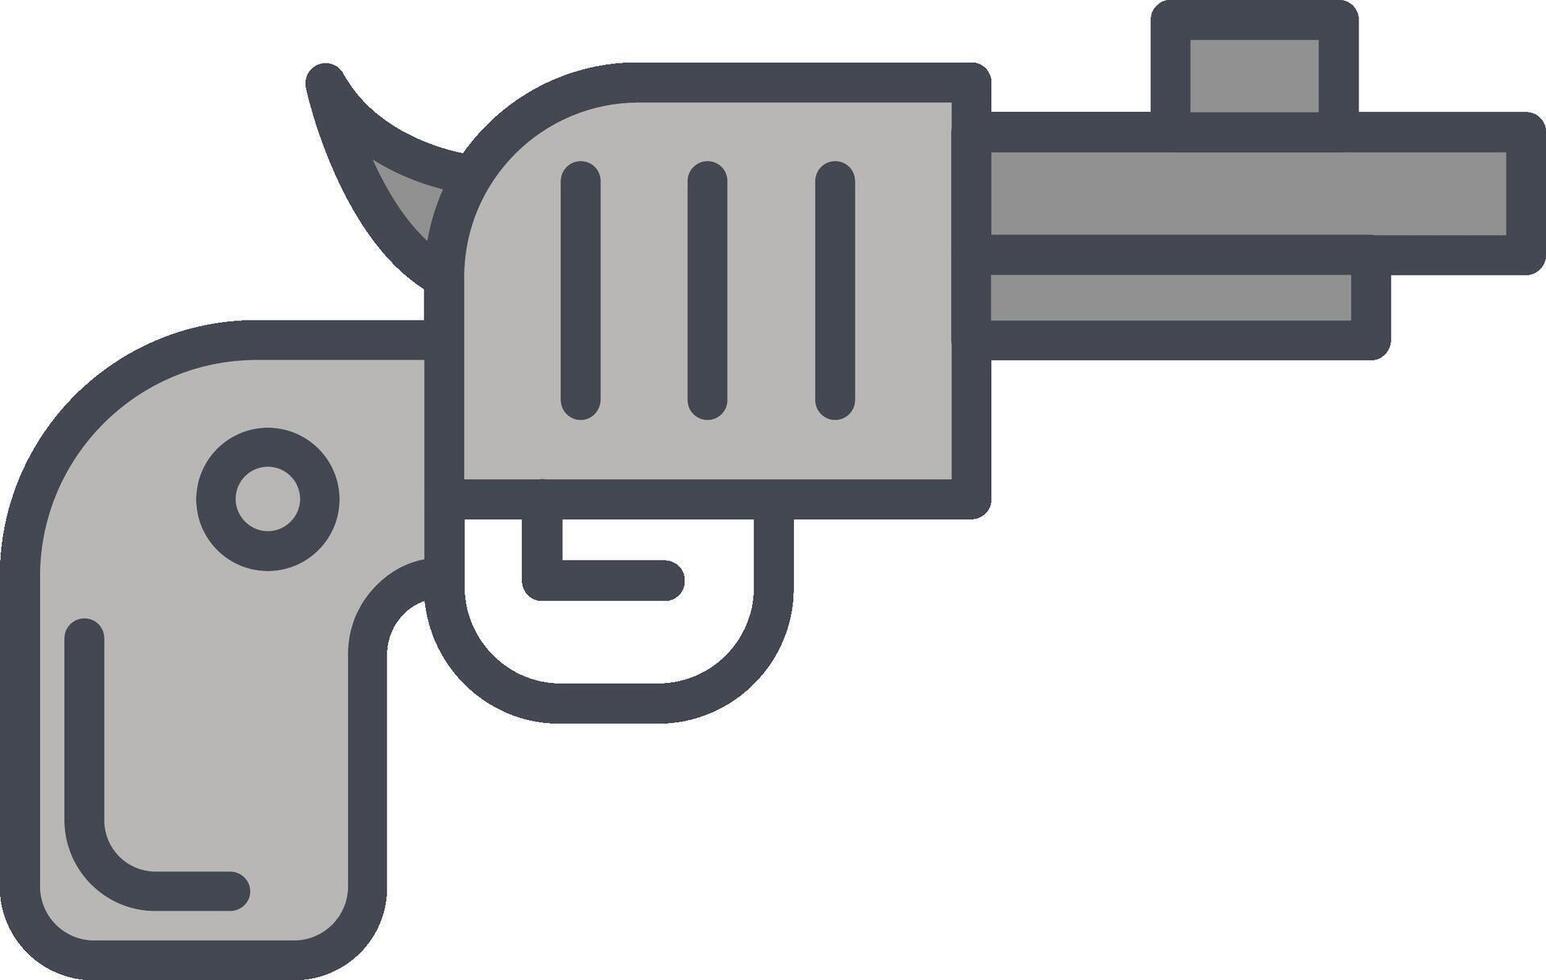 Revolver-Vektor-Symbol vektor